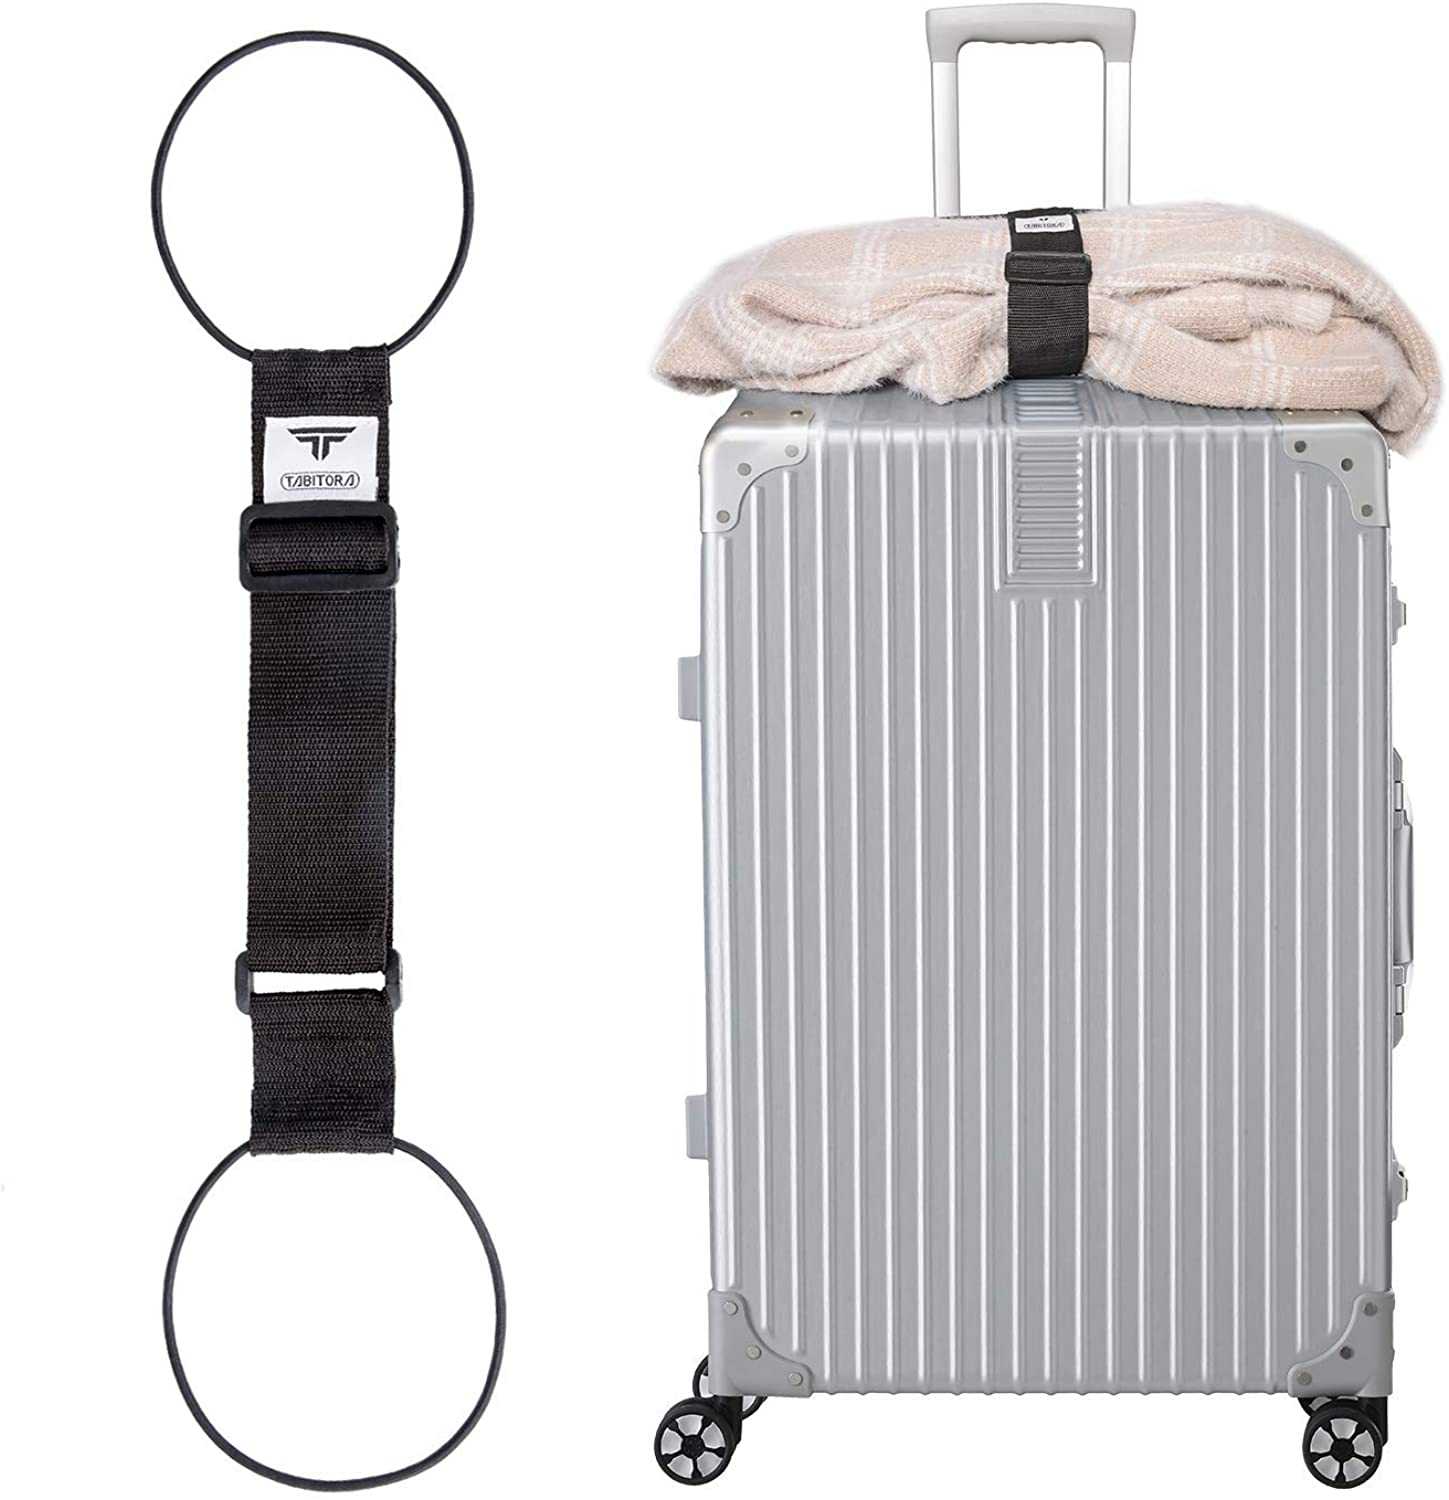 TABITORA 「BXD01-Black」 バッグとめるベルト スーツケースベルト 旅行用品 旅行便利グッズ スーツケースベルト 57-75cm 調節可 x 幅5cm 2